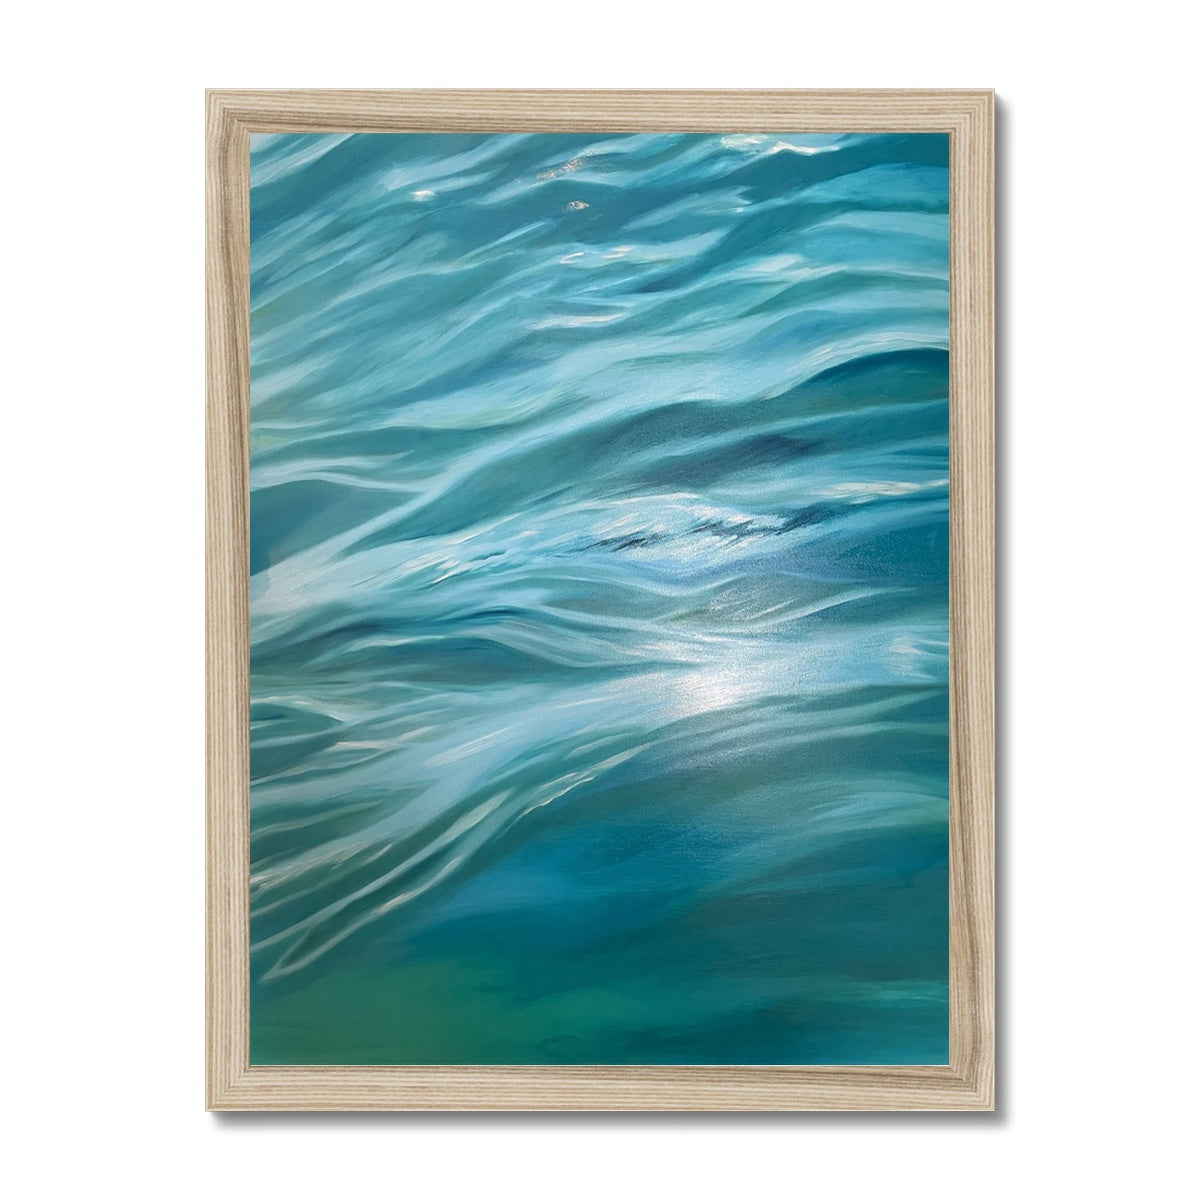 Ocean Bliss 1 Framed Print